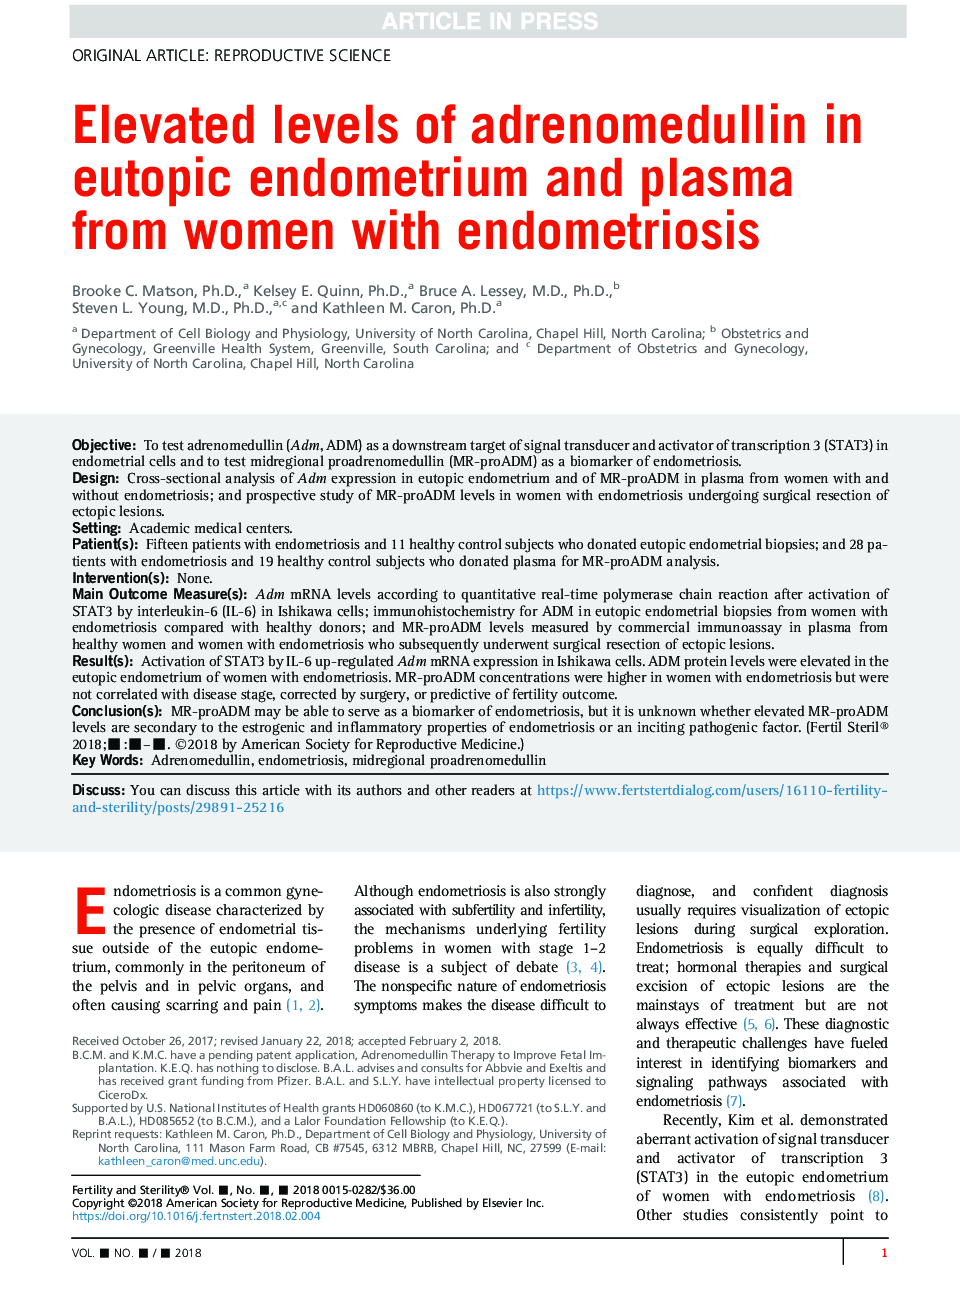 سطح بالایی از آدنومدولین در اندومتر و پلاسمای اودوپیک از زنان مبتلا به آندومتریوز 